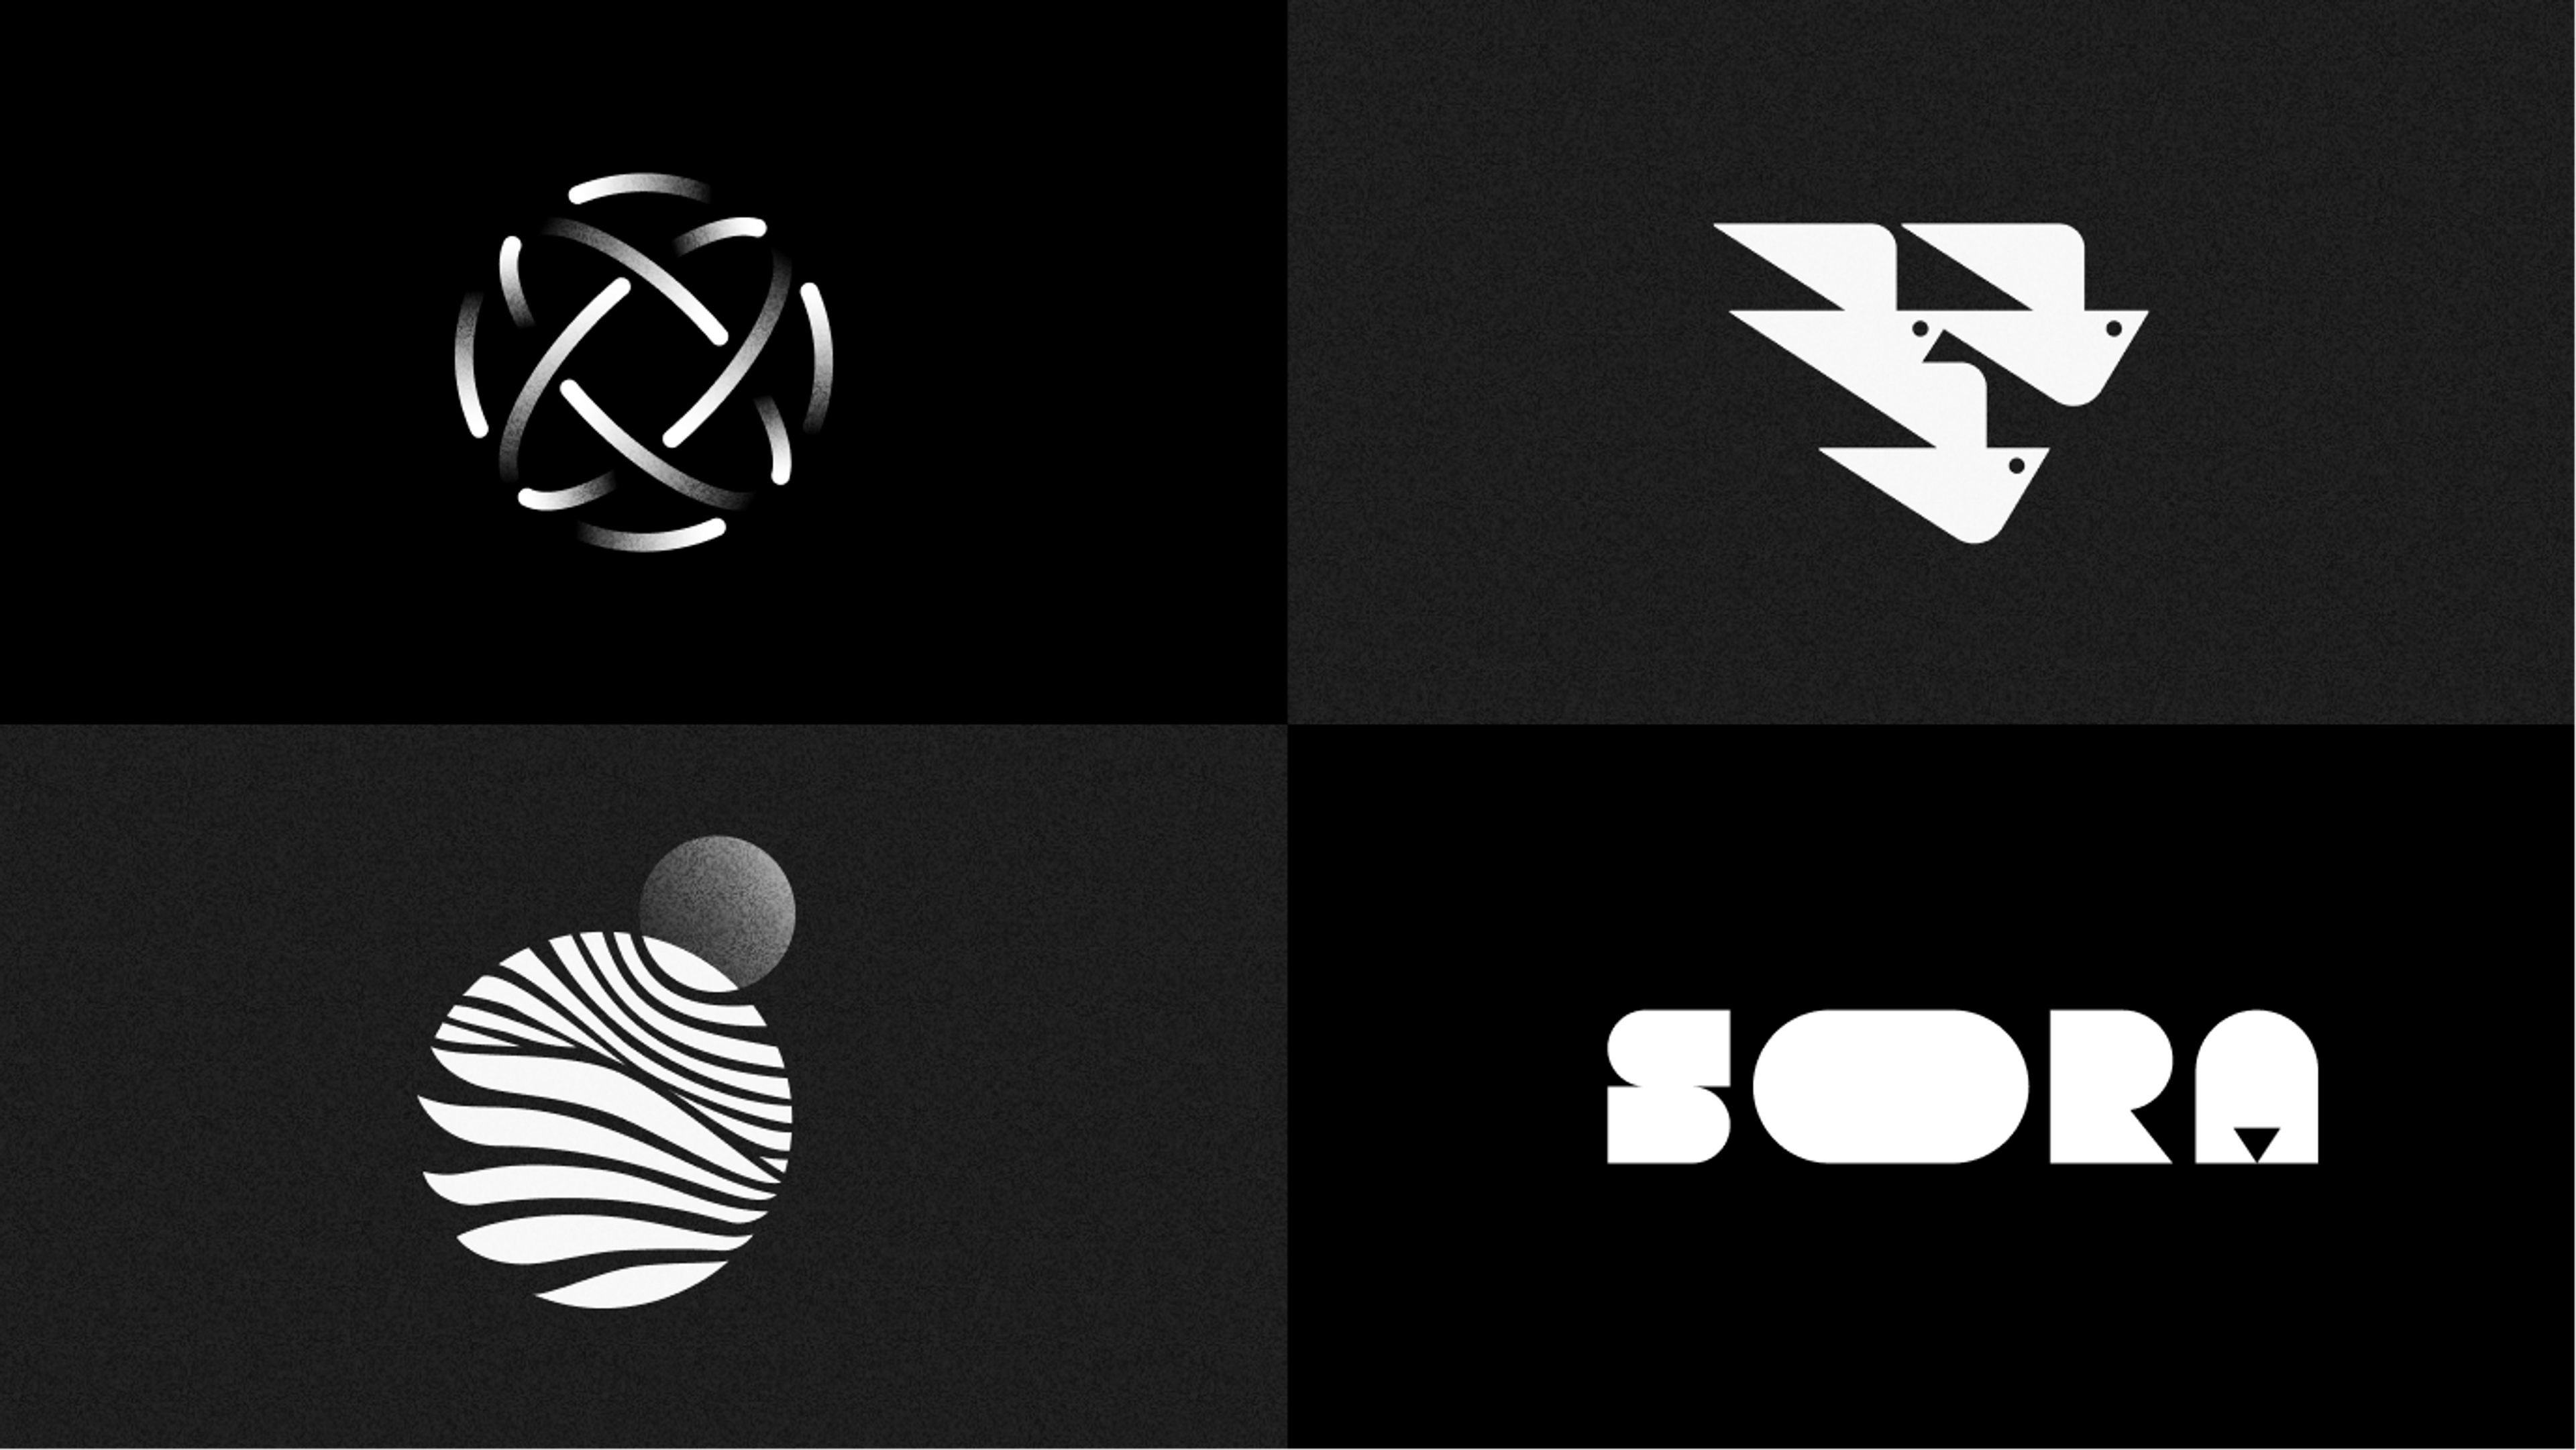 Sora Union logo prototypes